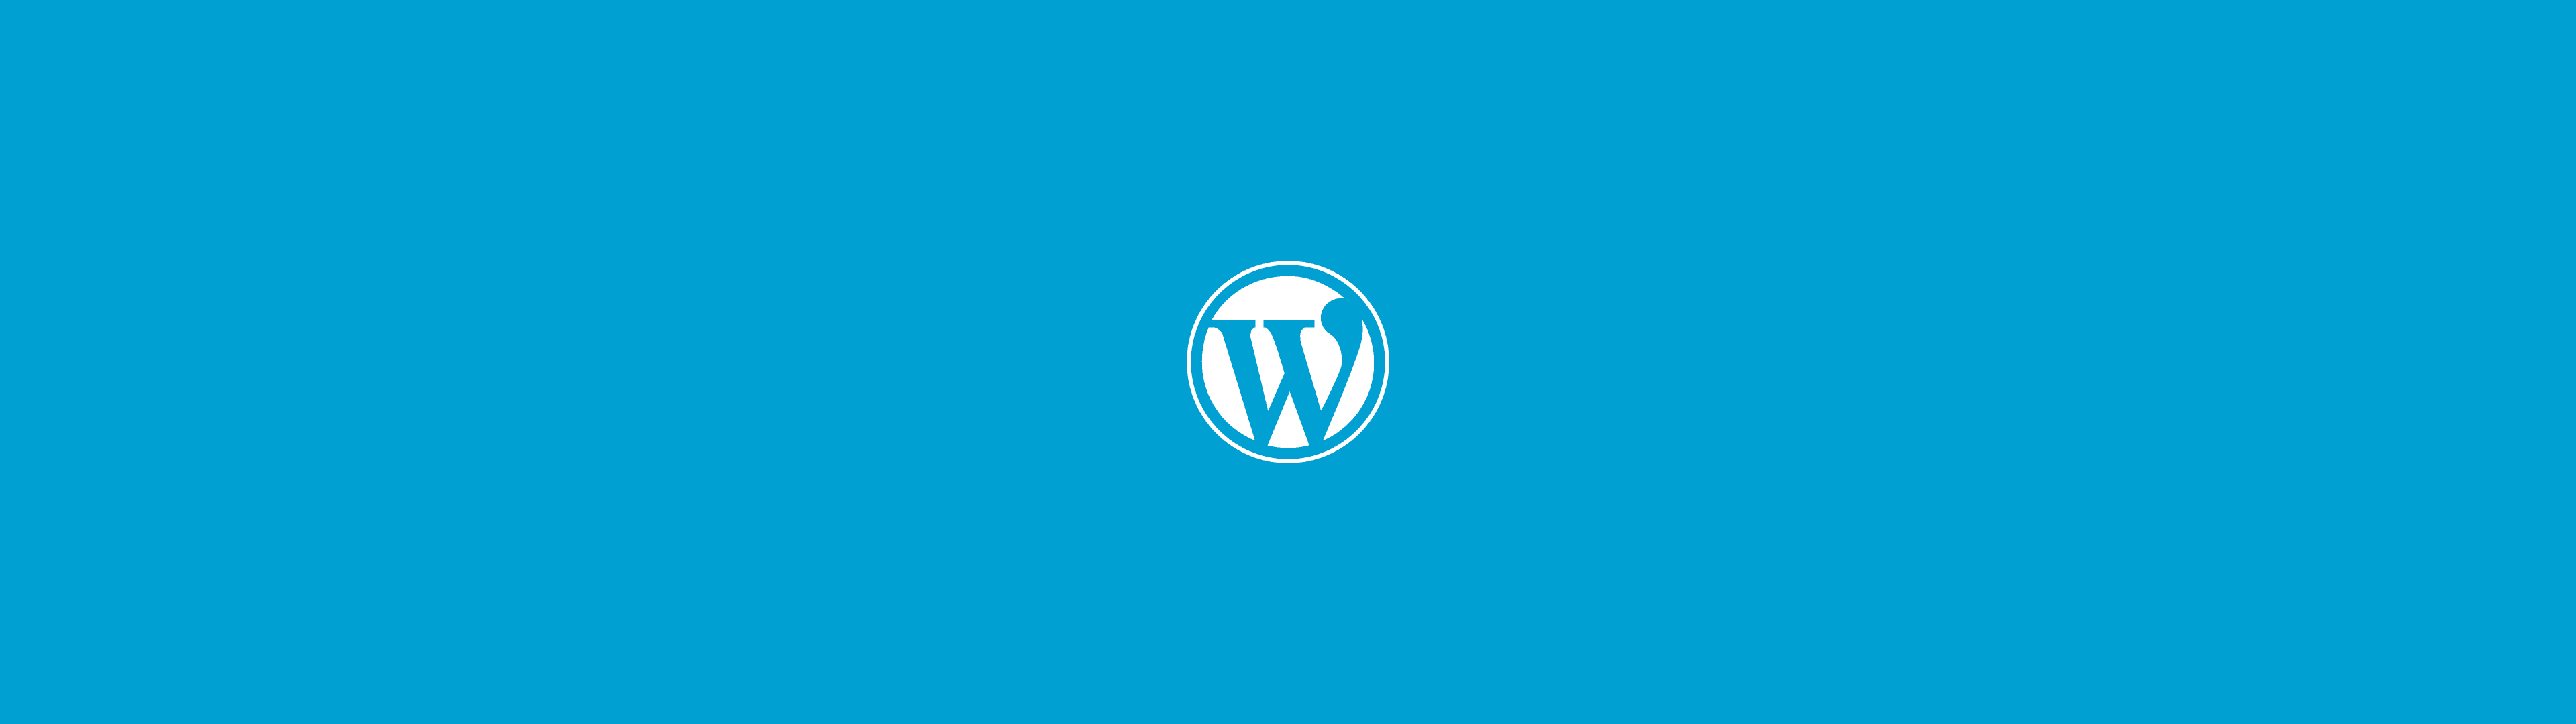 Illustration représentant le logo de WordPress